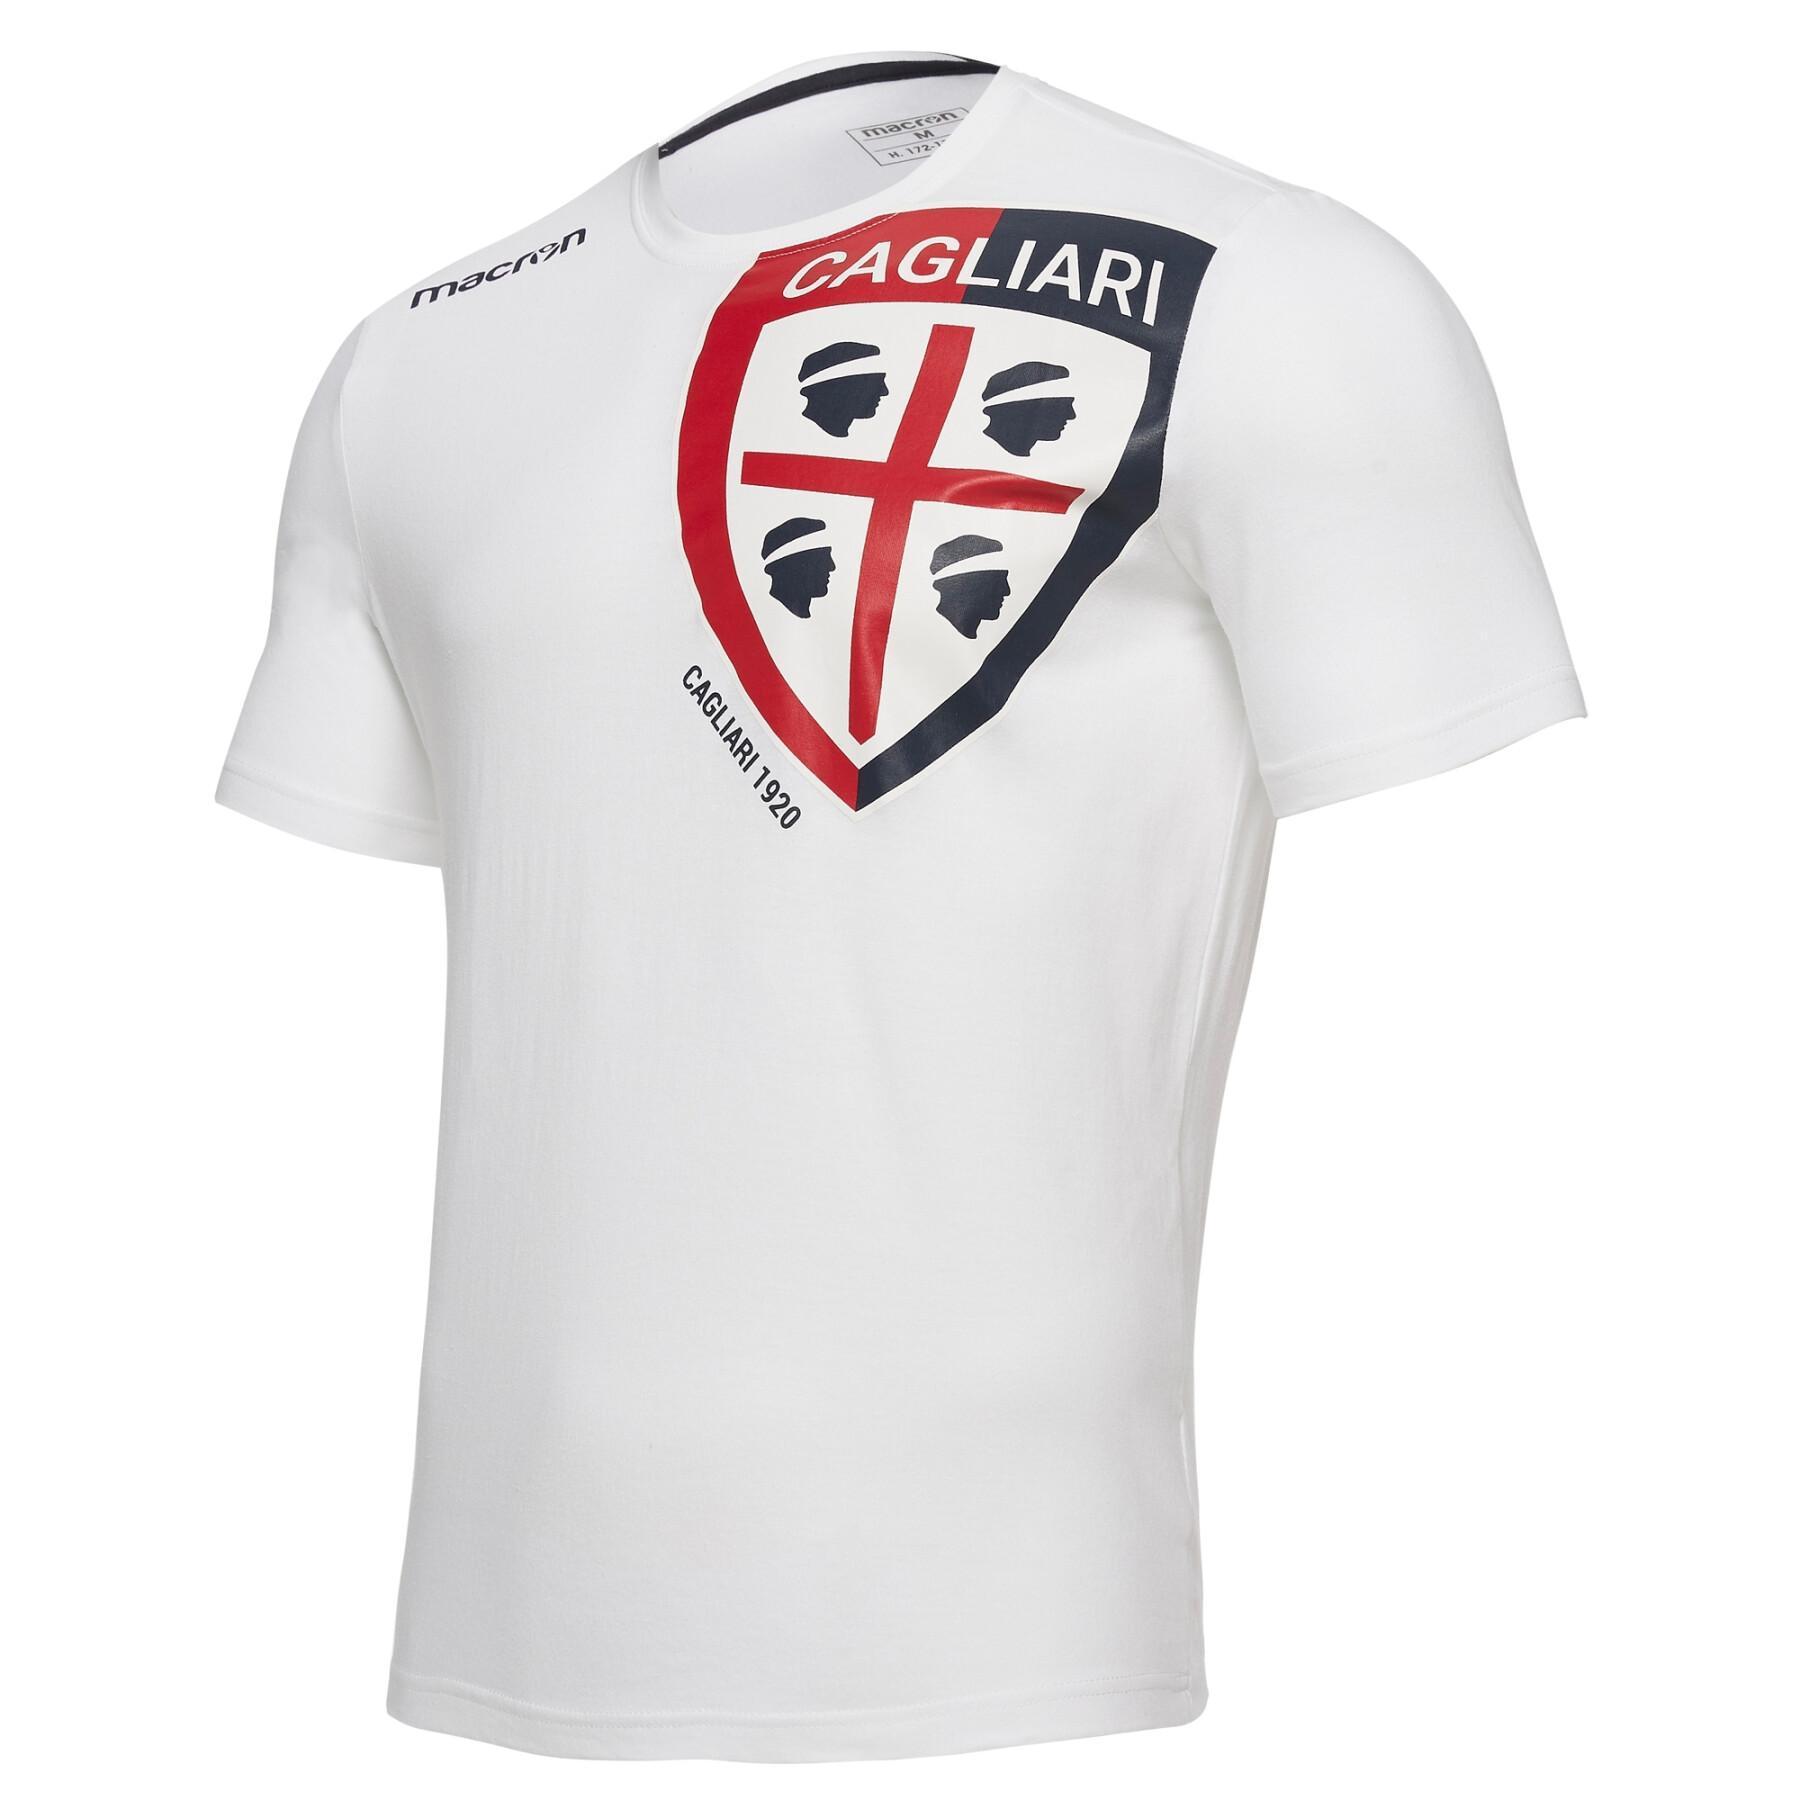 T-shirt Cagliari Calcio bh 1